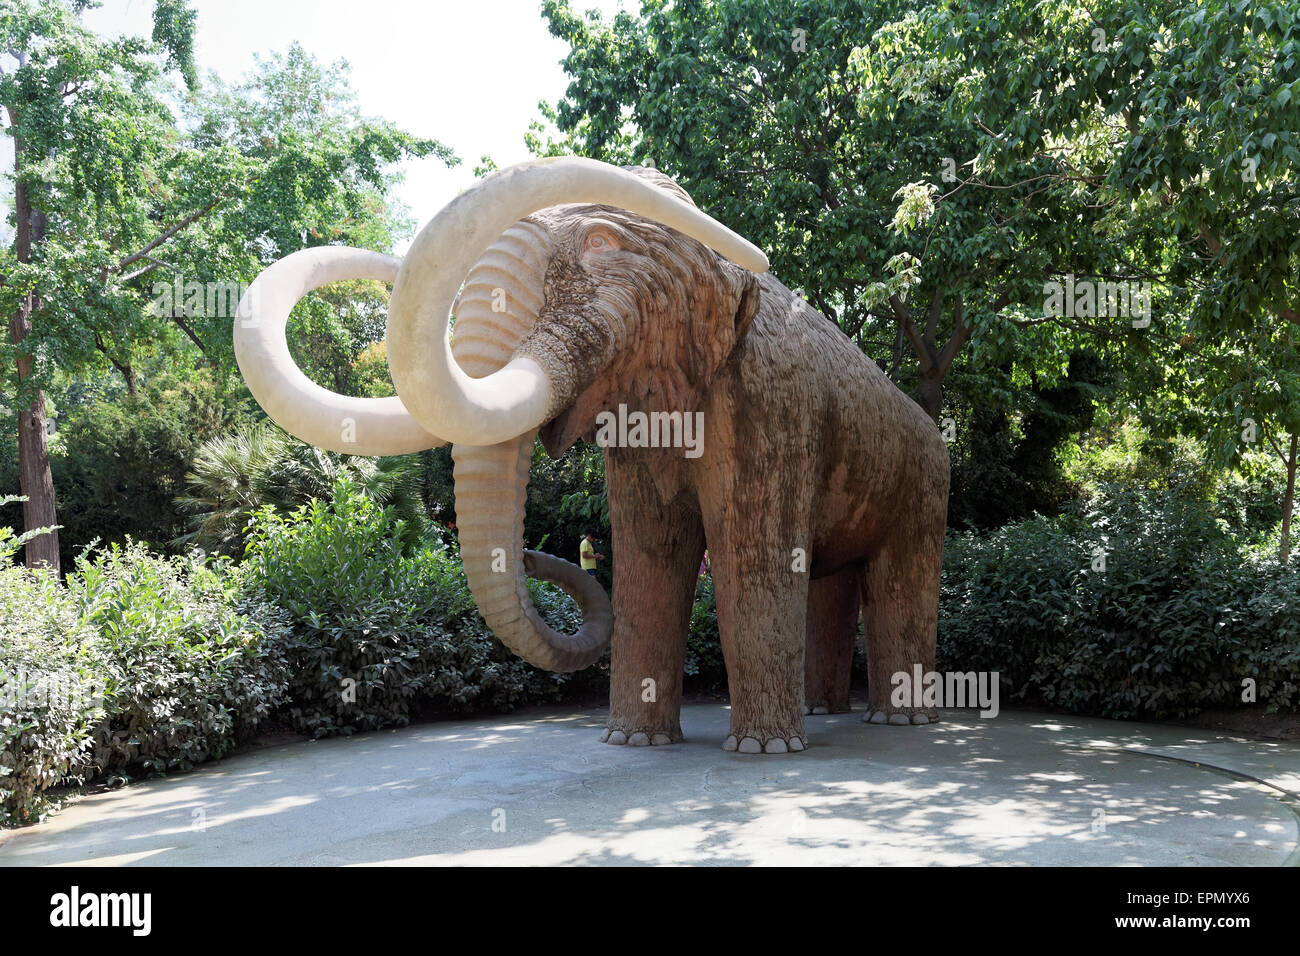 Parc de la Ciutadella Barcelona Catalonia Spain Statue of a mammoth Stock Photo